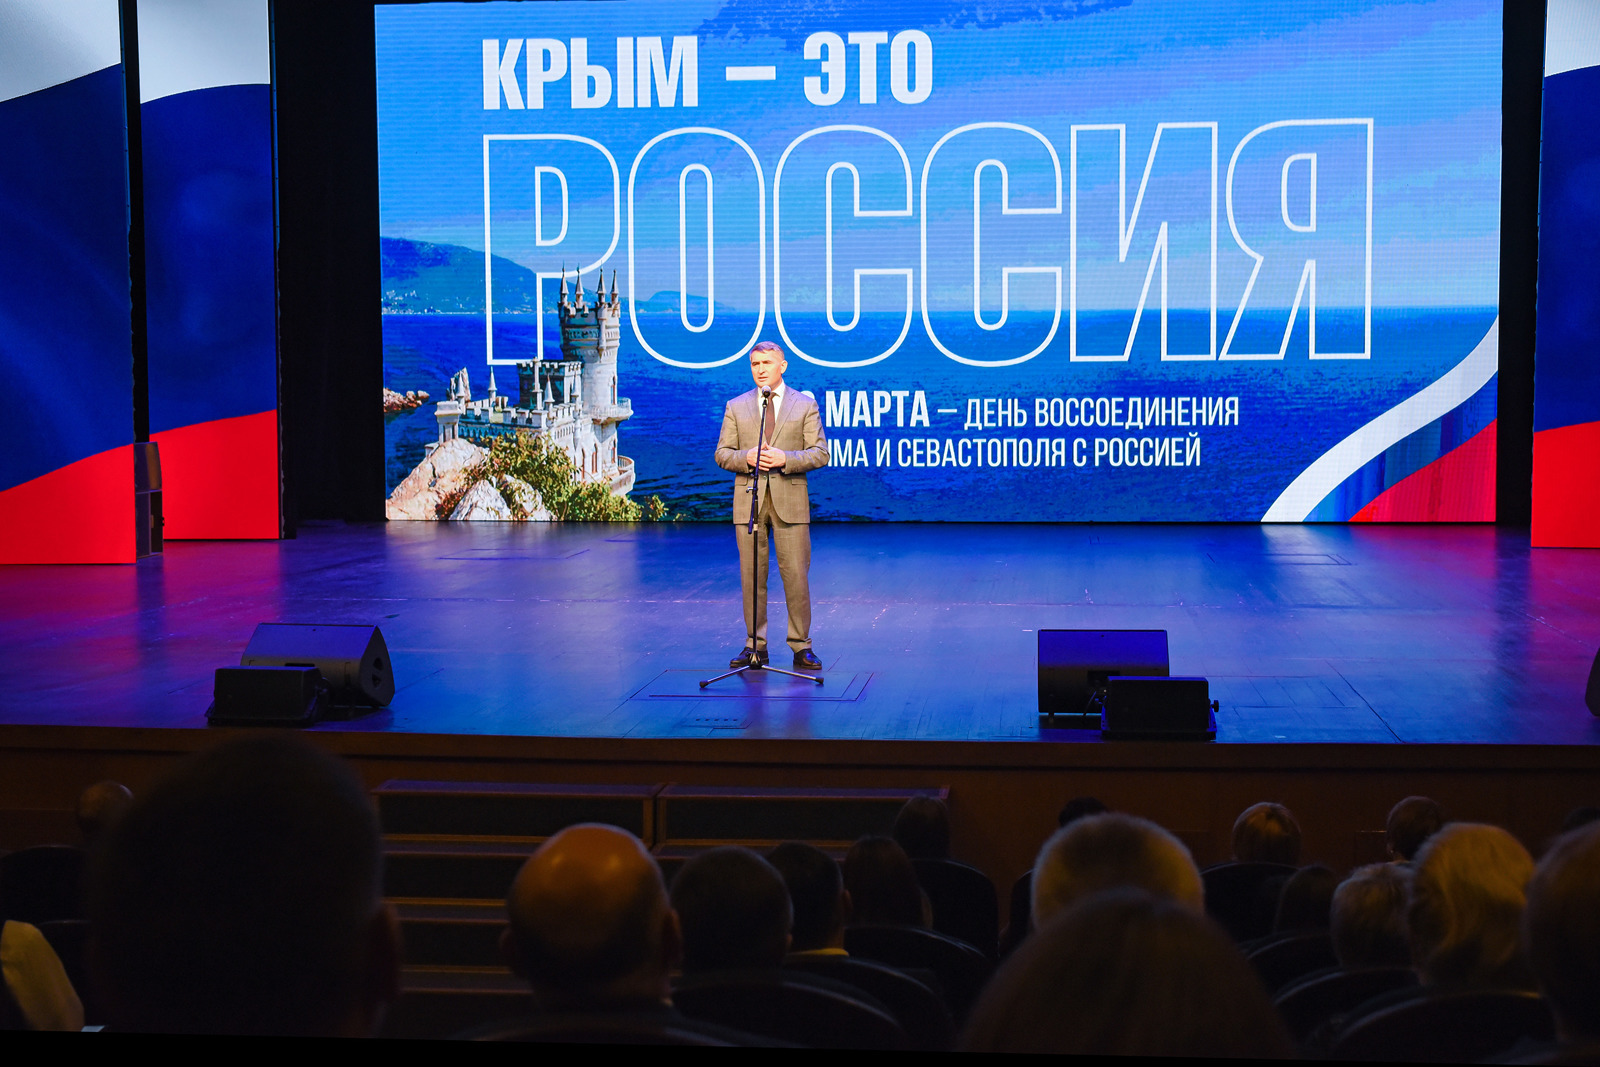 «Крым пысӑк пуласлӑхлӑ регион», – тесе палӑртнӑ  Олег Николаев